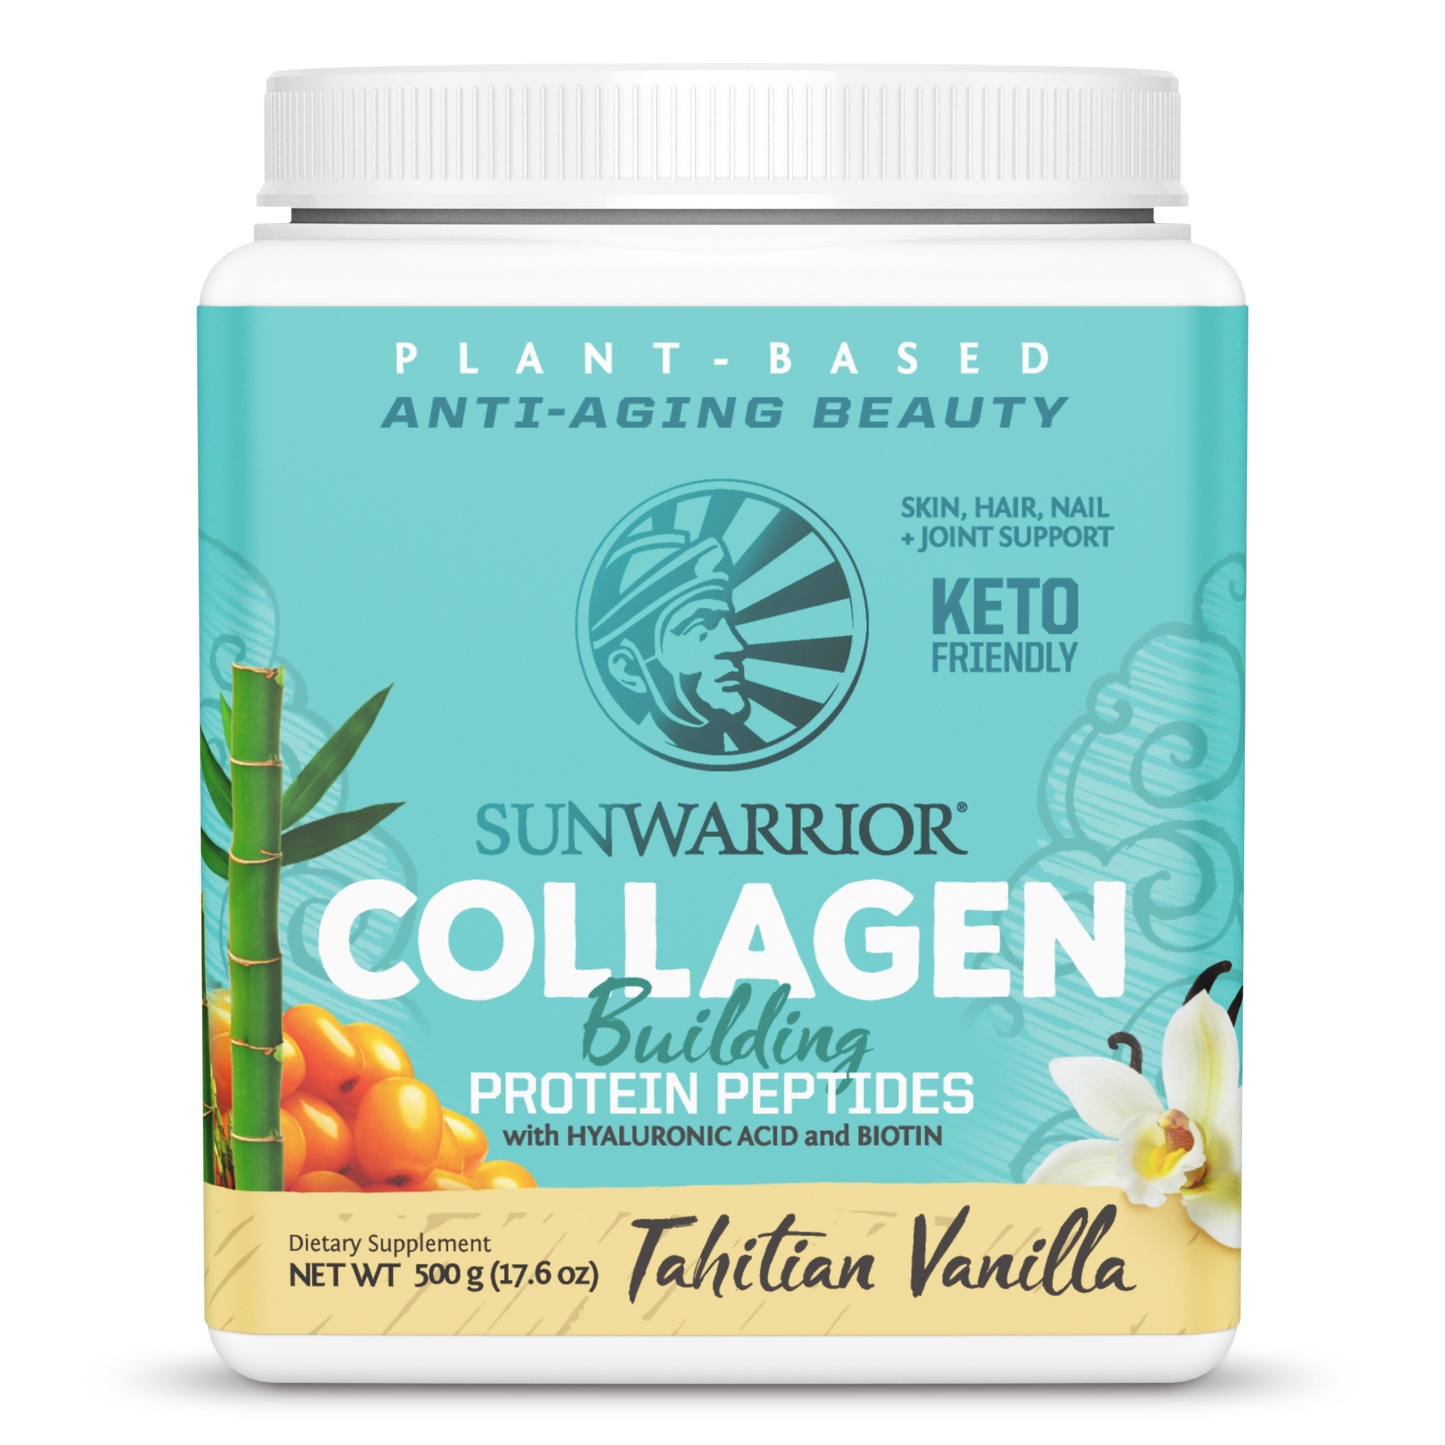 Vegan Collagen Protein Peptides Powder